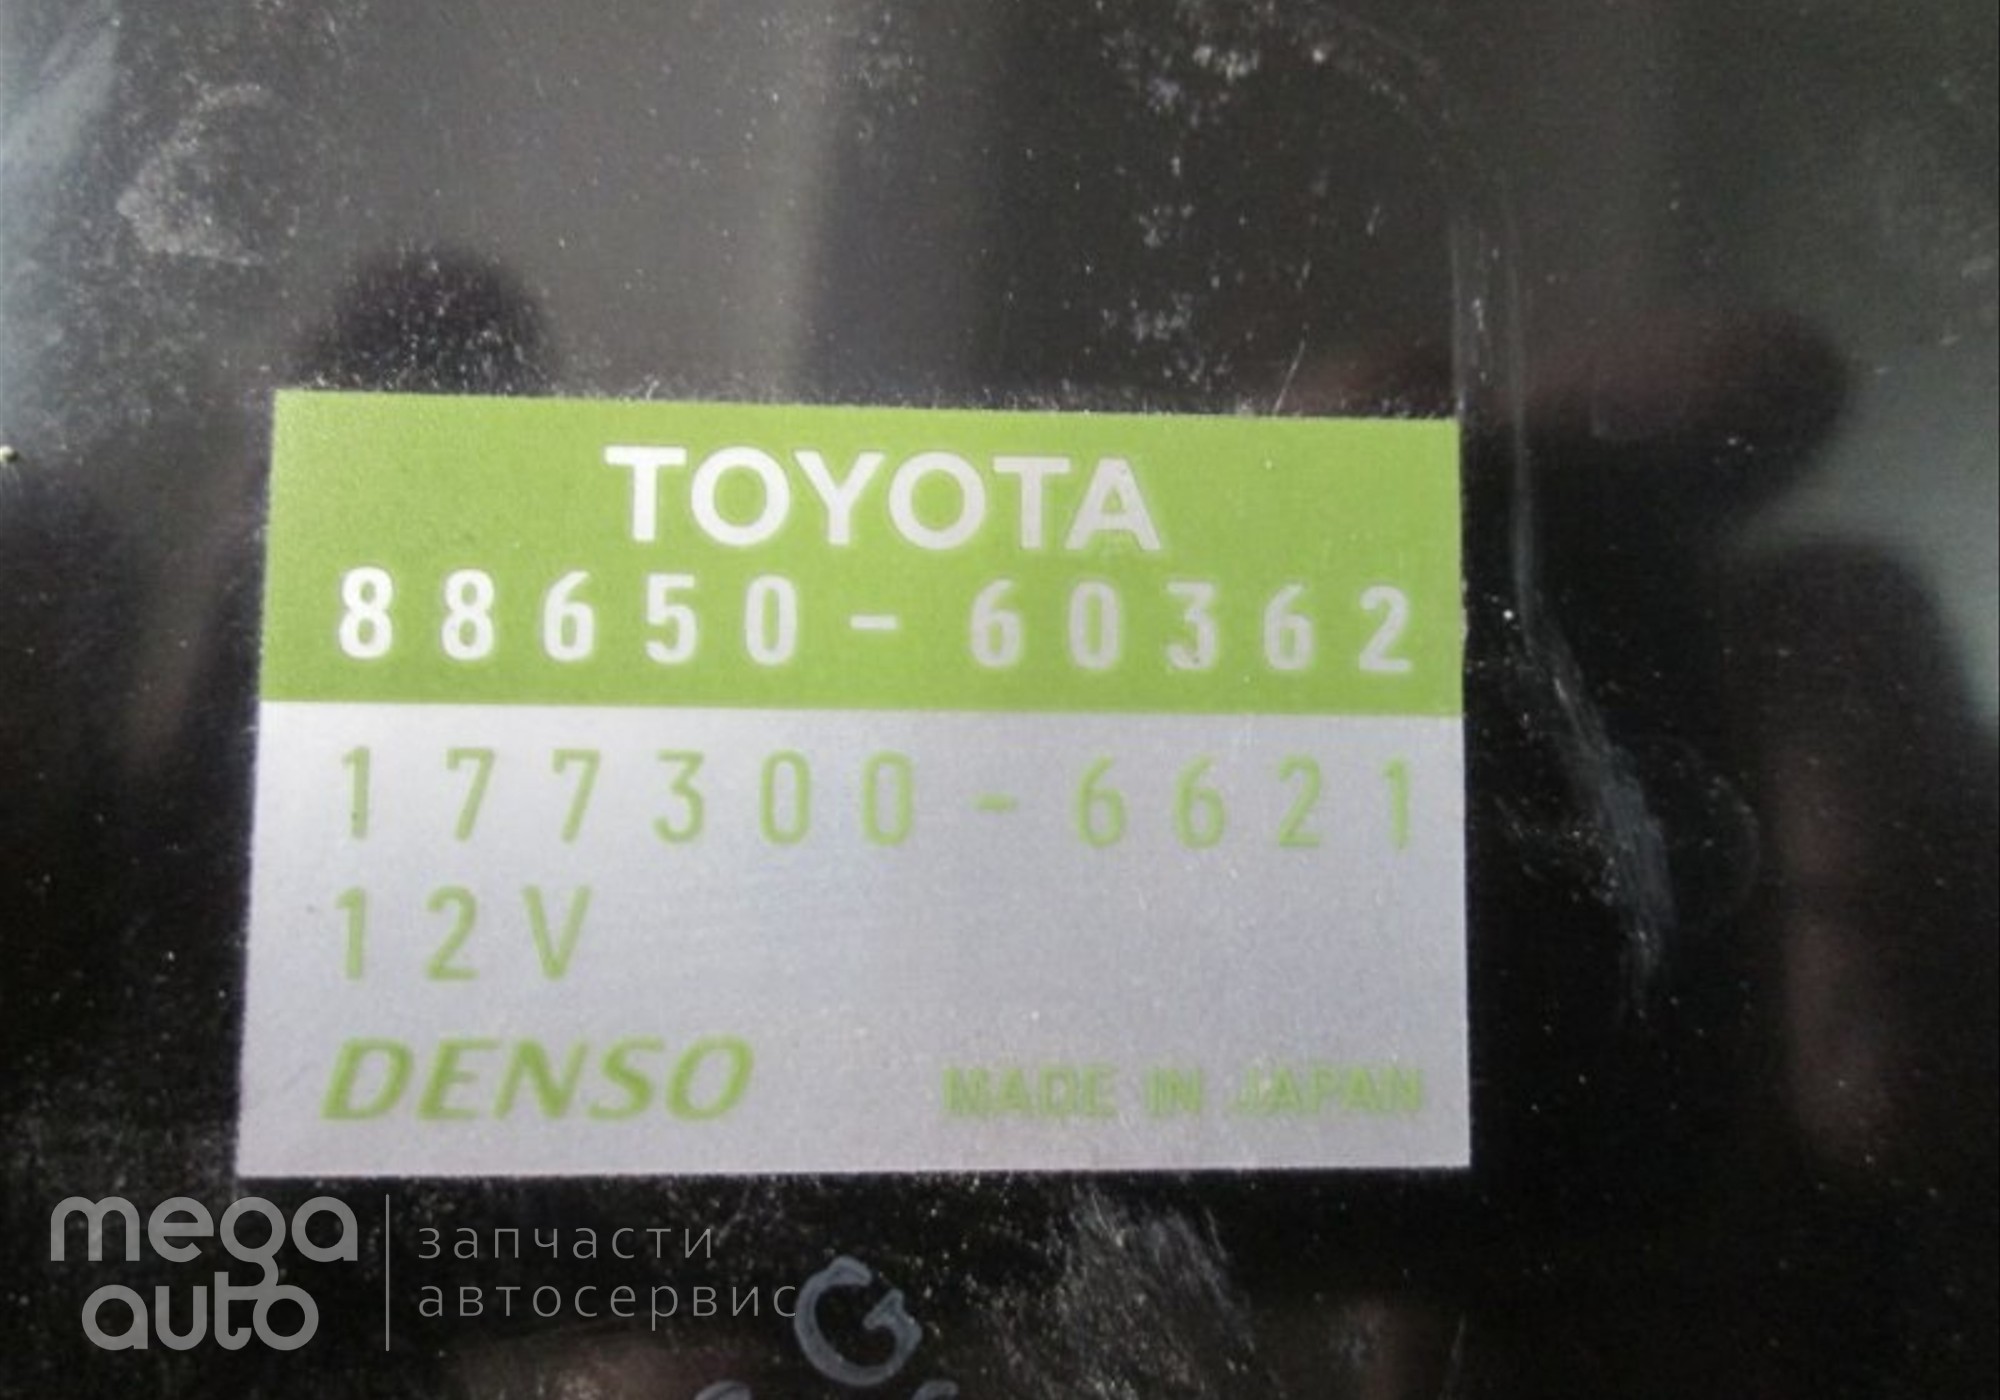 8865060362 Блок управления кондиционера Тойота для Toyota Land Cruiser